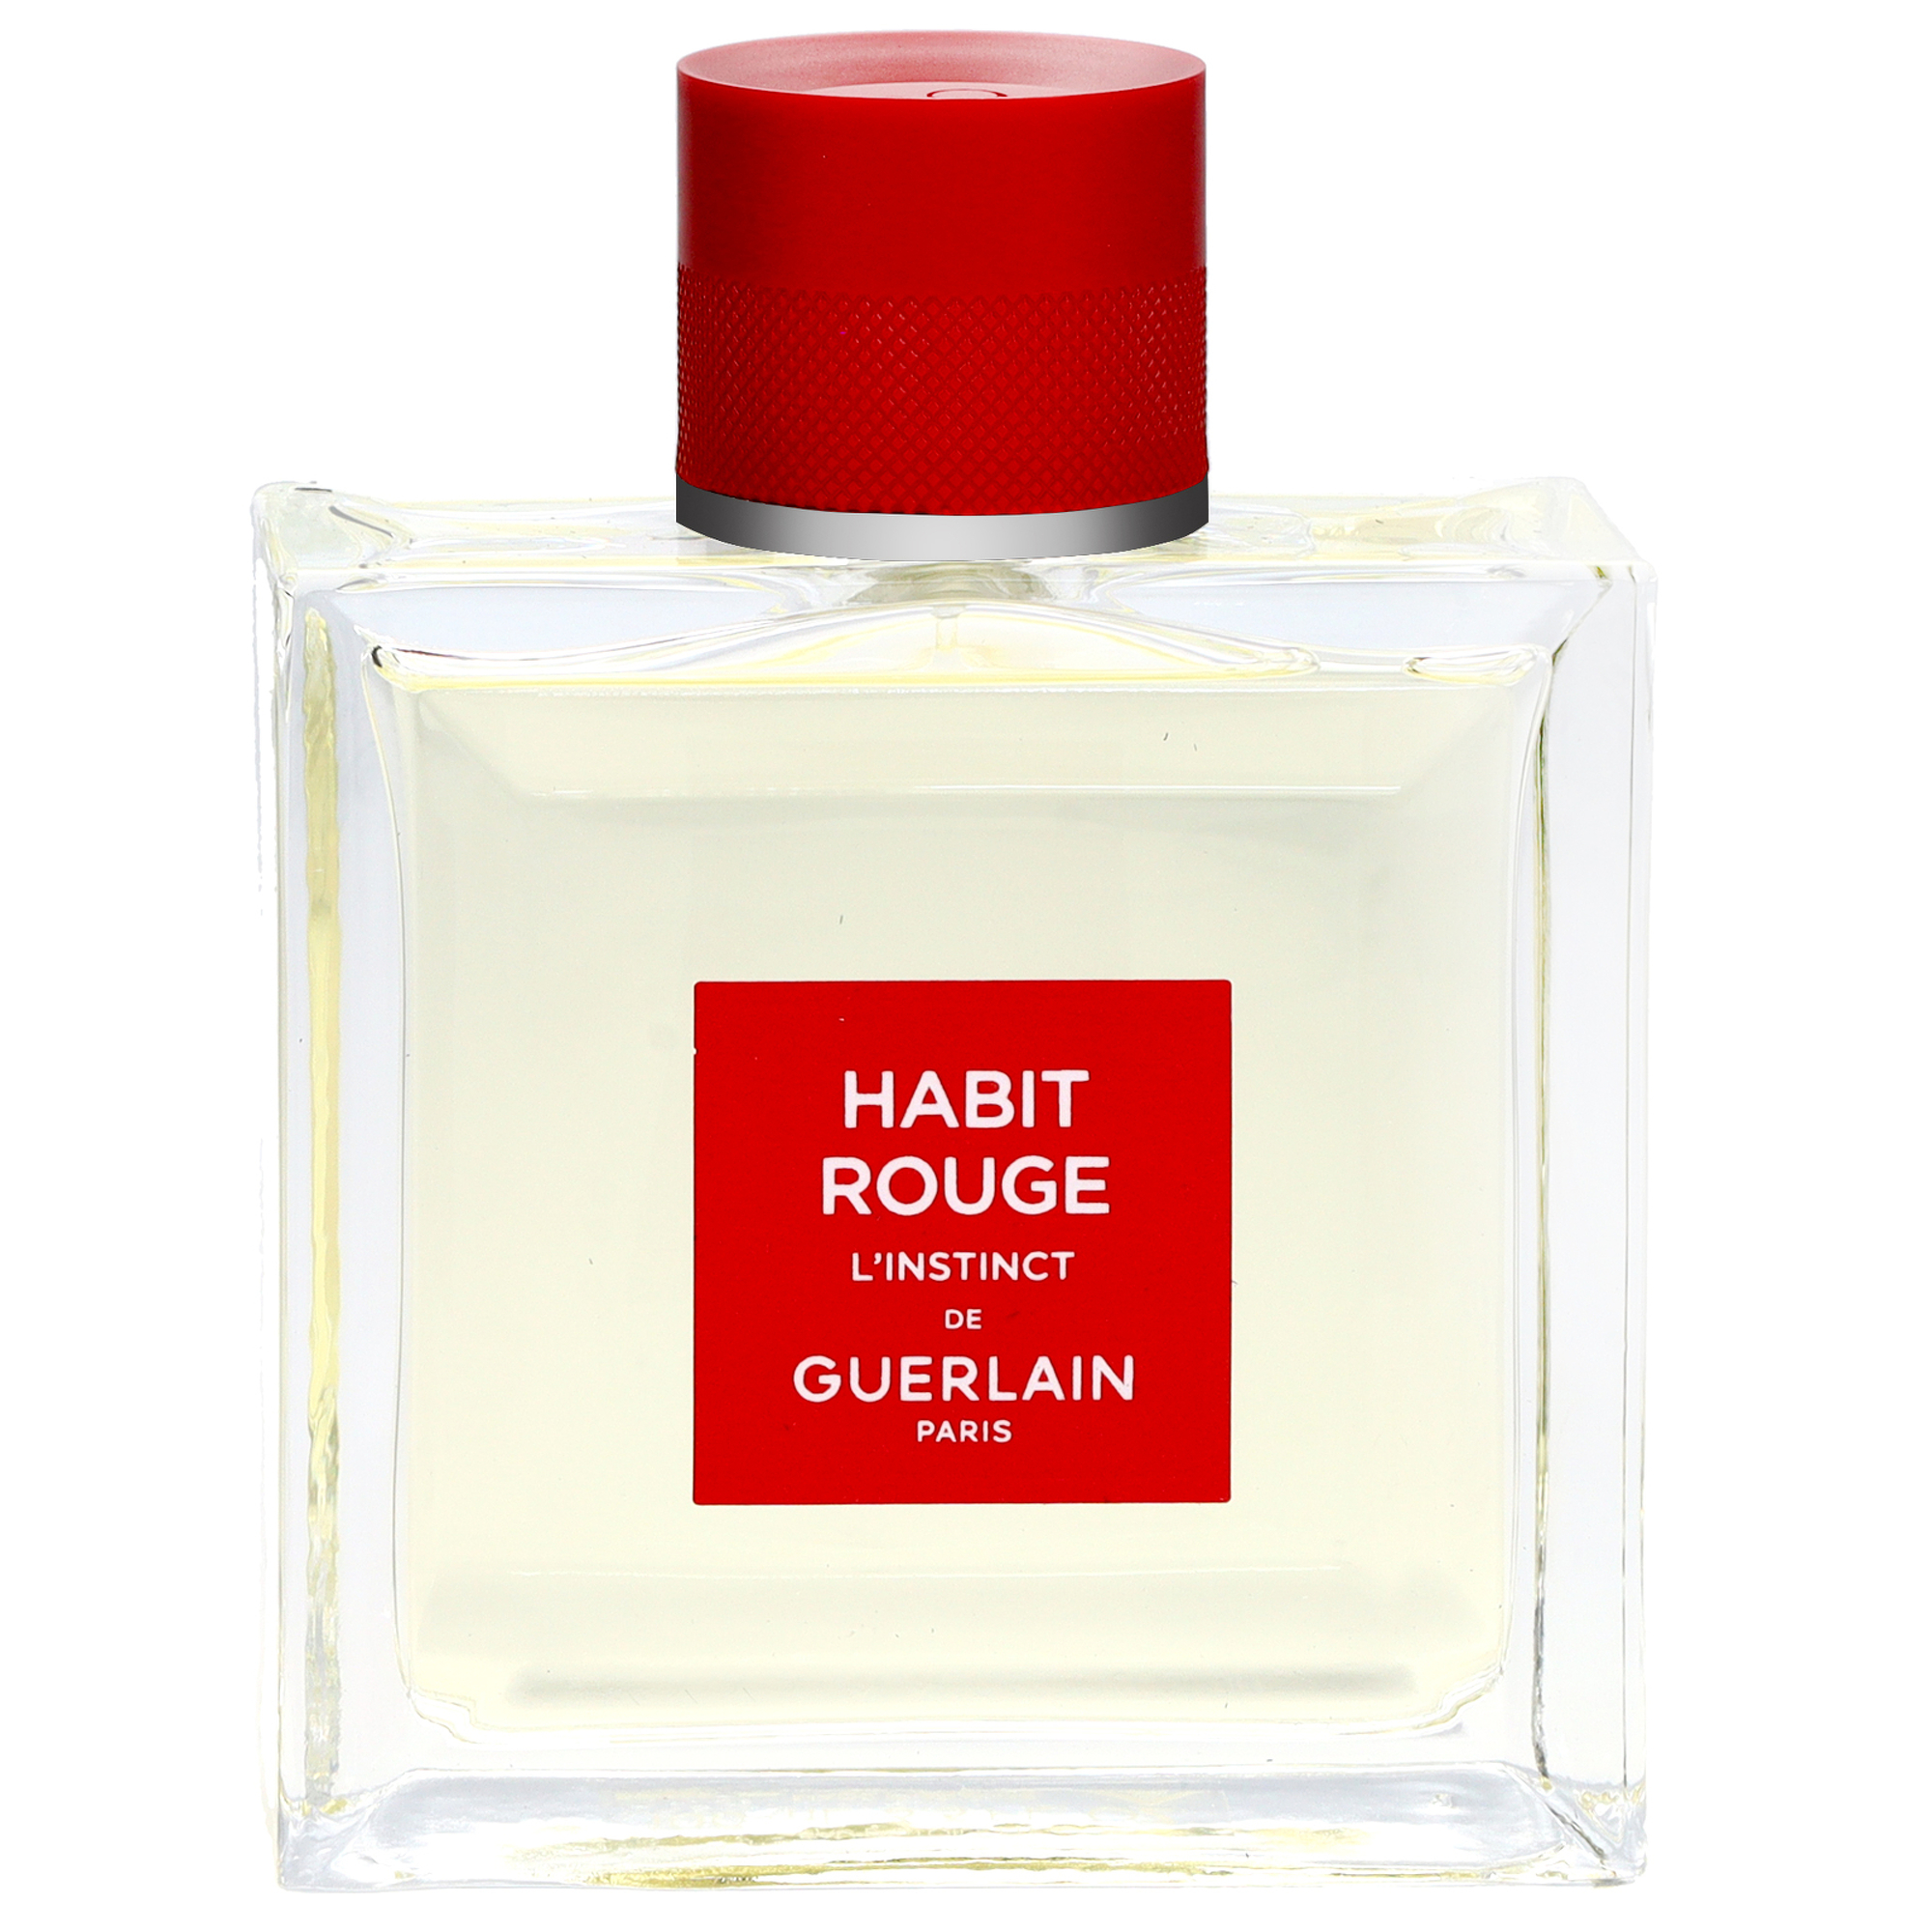 Photos - Men's Fragrance Guerlain Habit Rouge L'Instinct Eau de Toilette Intense Spray 100ml / 3.3 